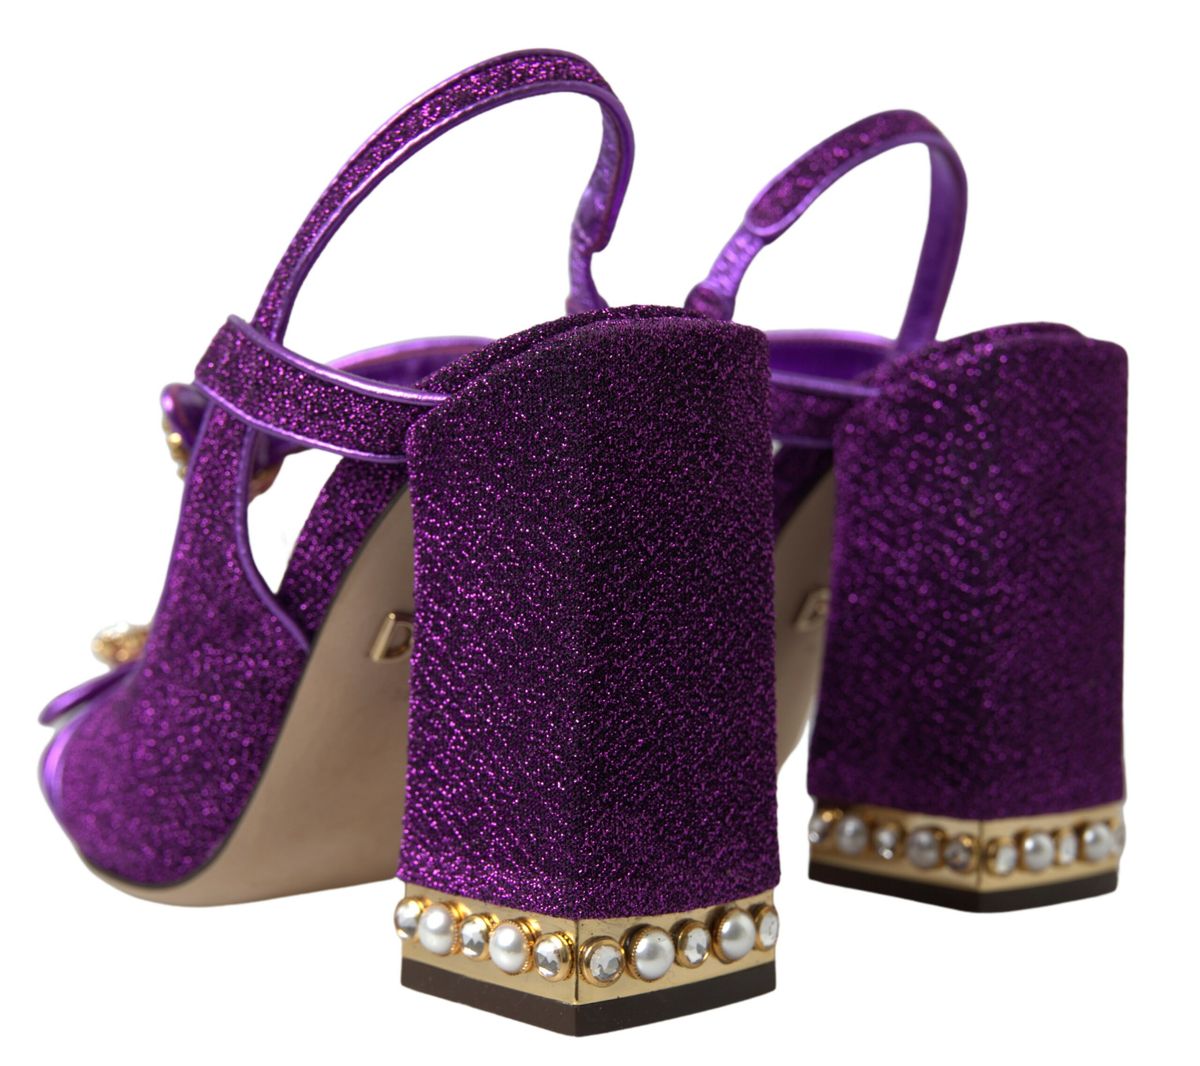 Elegant Purple Ankle Strap Heels